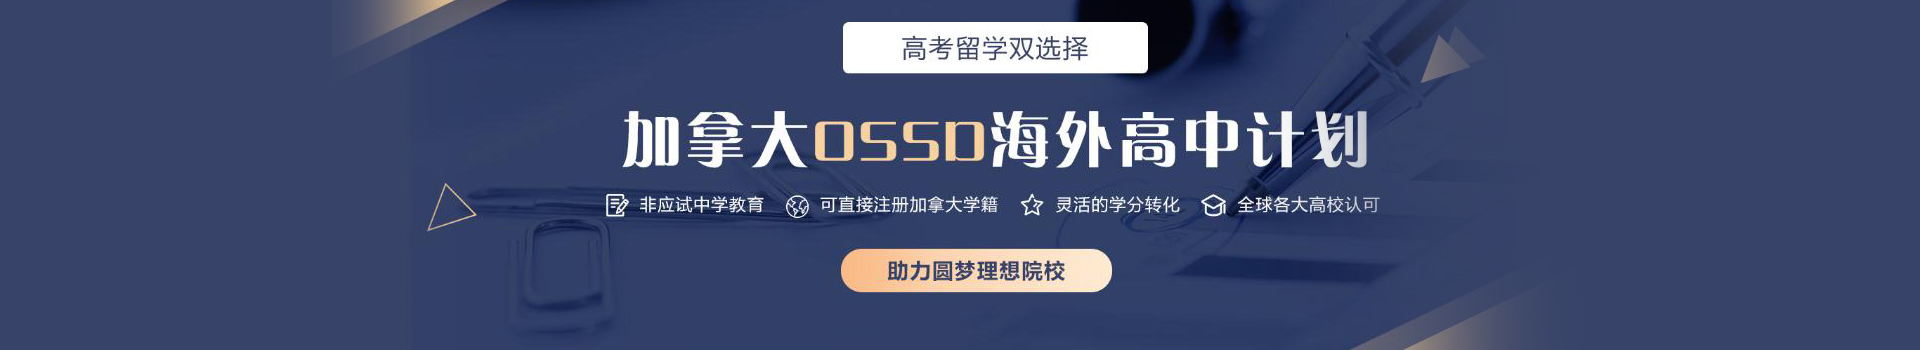 重庆新航道OSSD课程